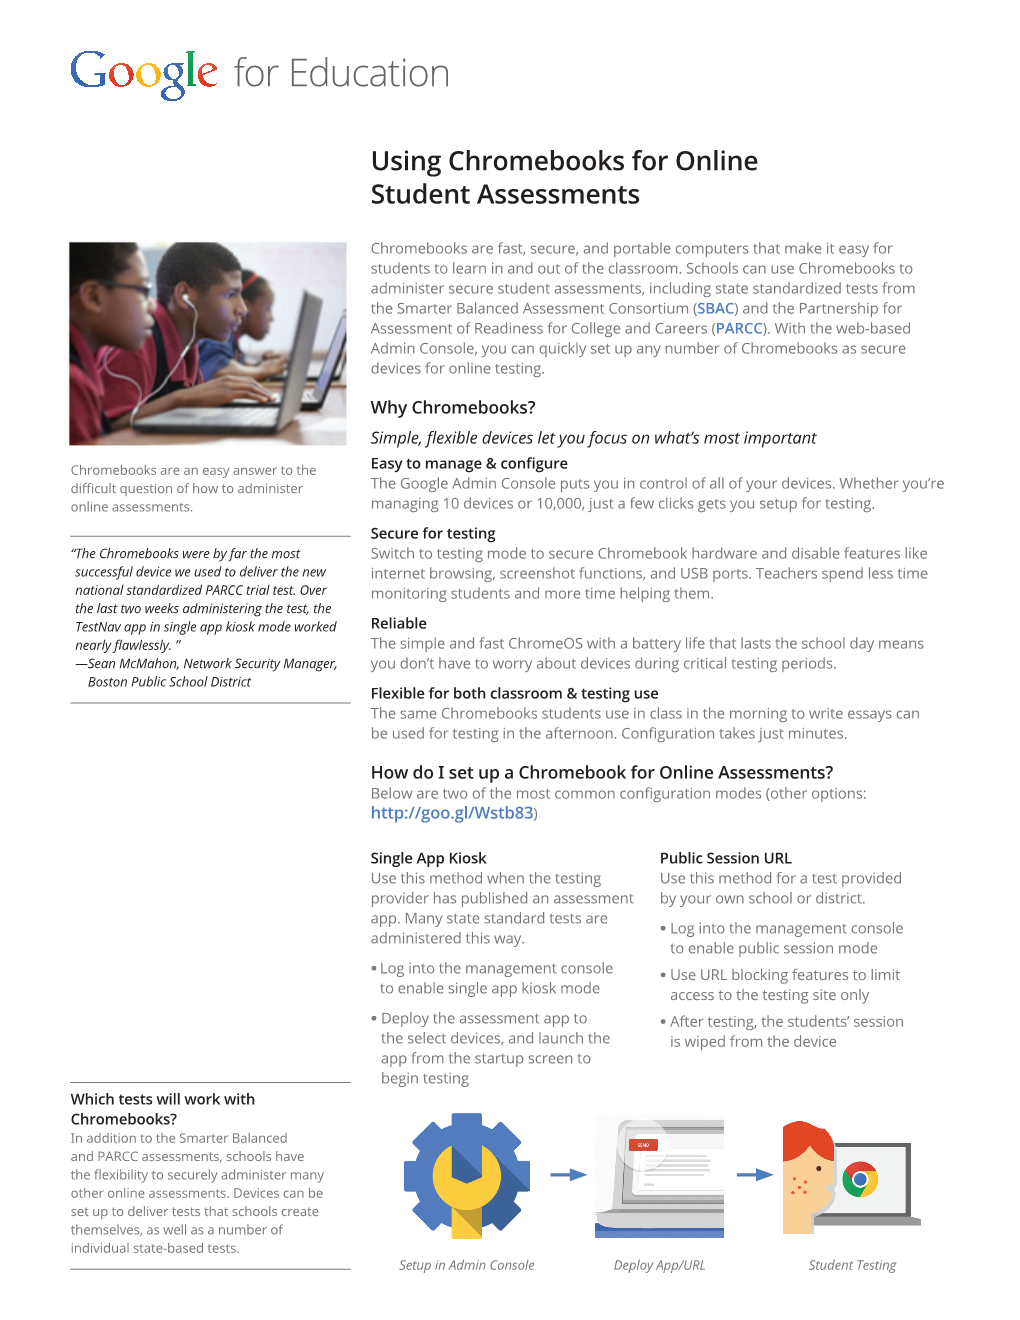 Using Chromebooks for Online Student Assessments